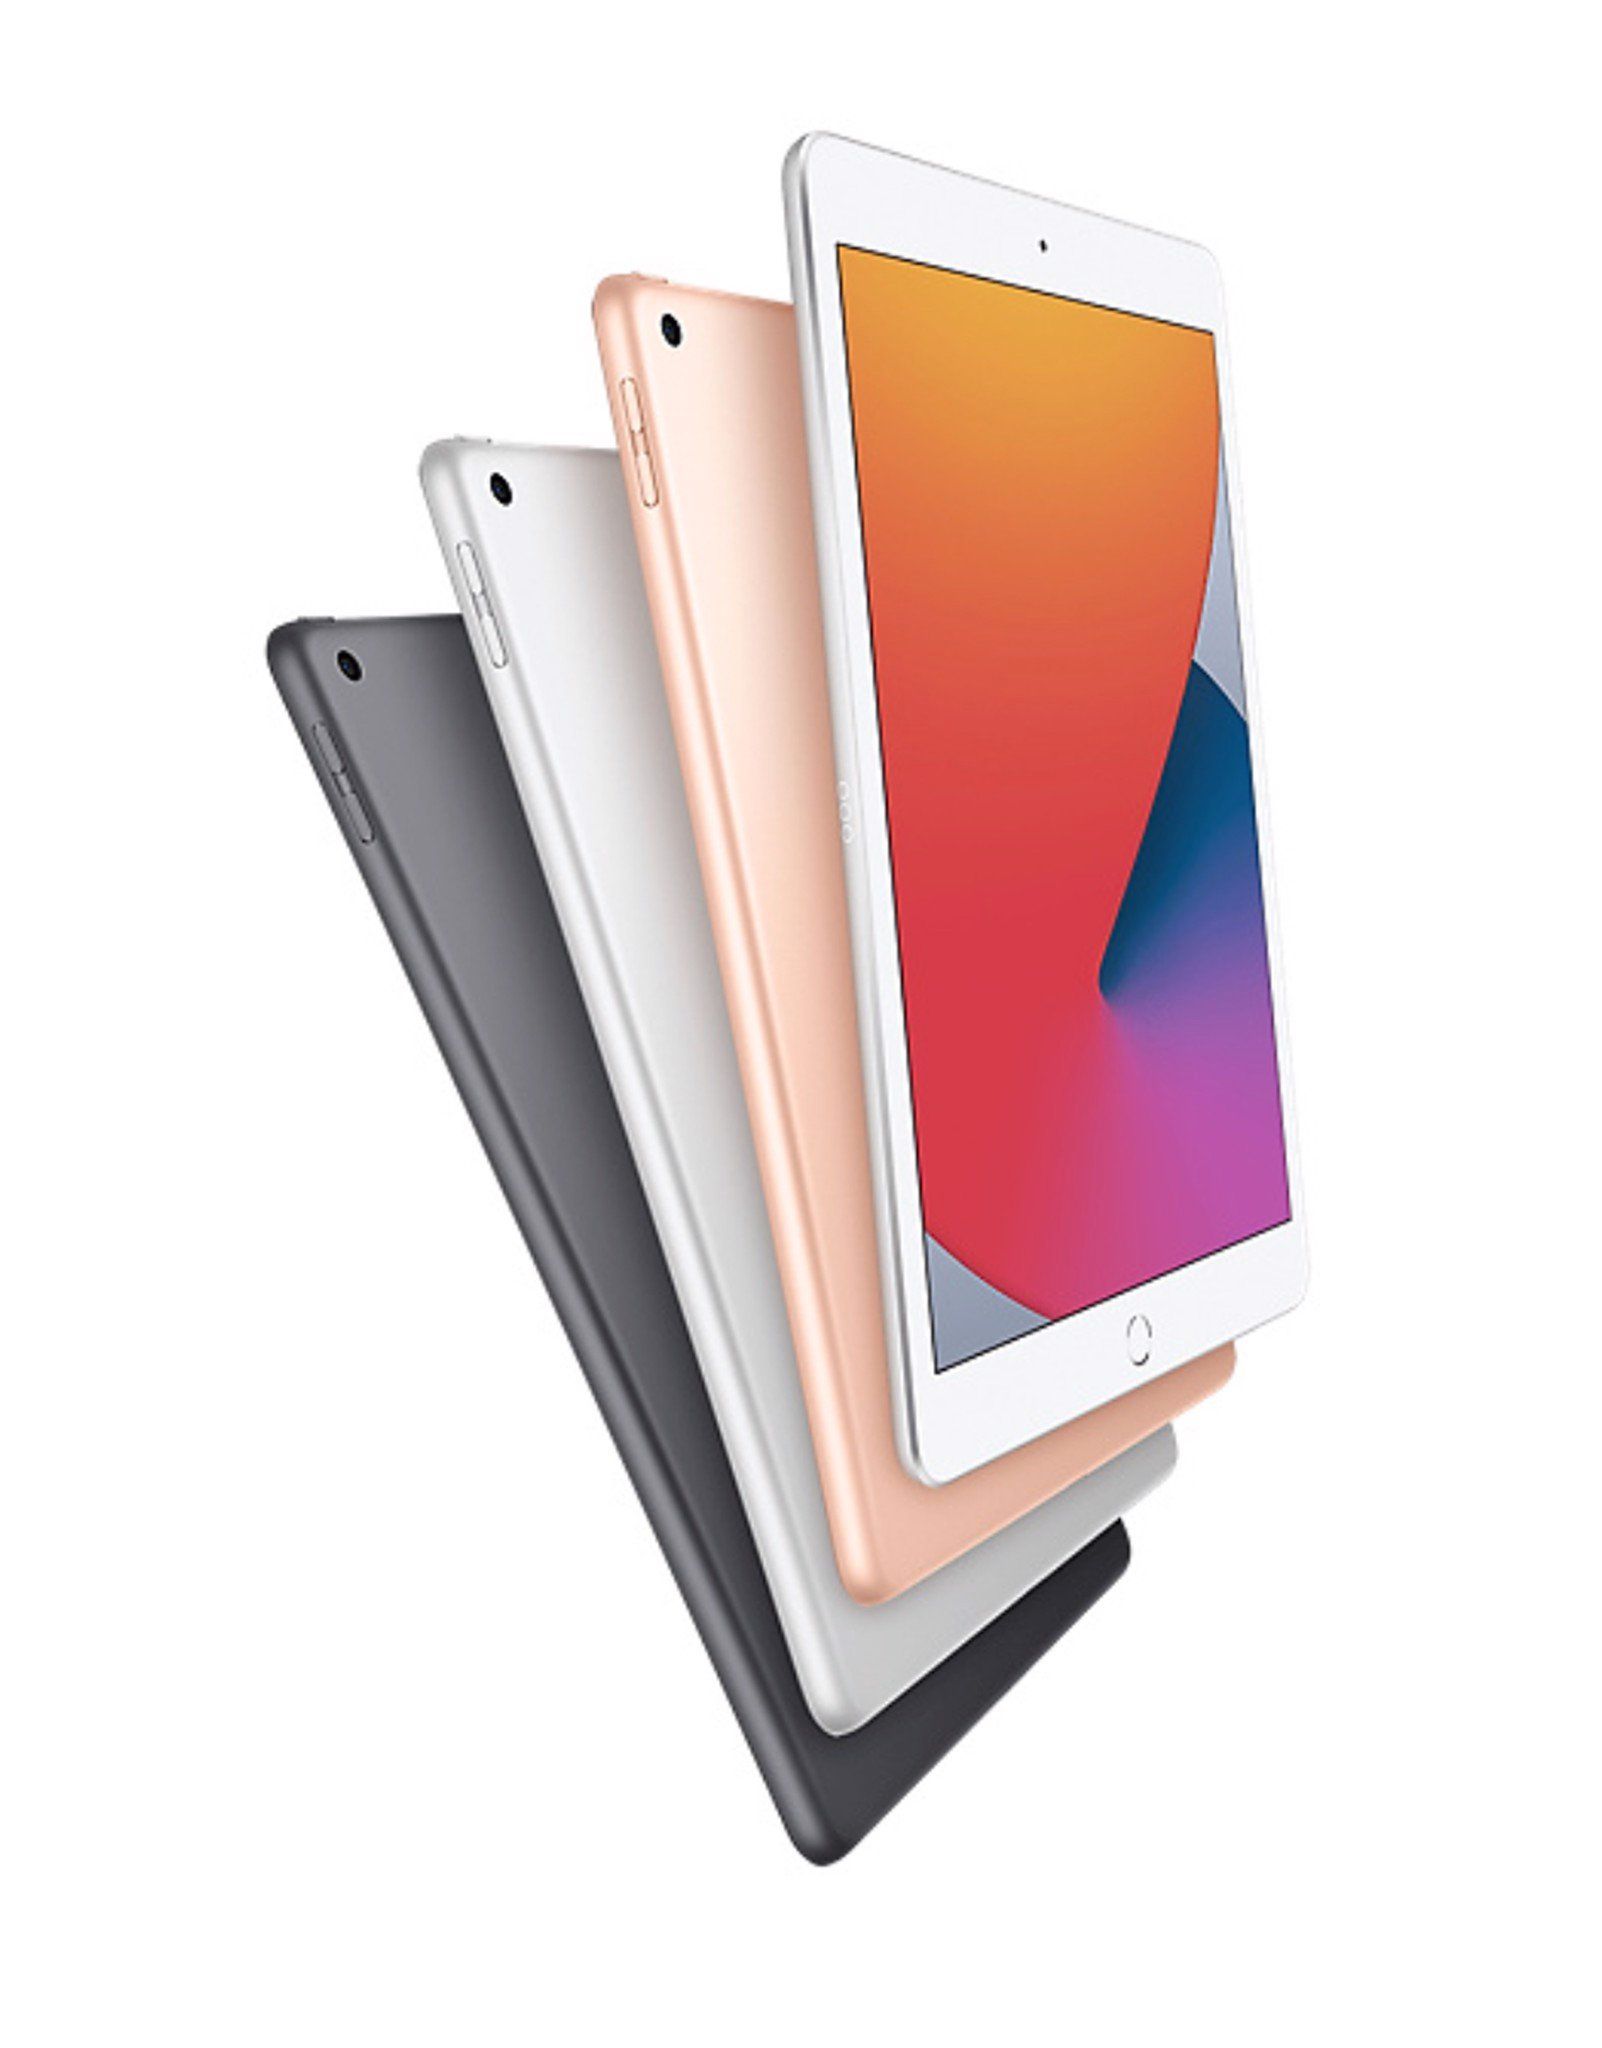 iPad Gen 8 2020 10.2inch Wifi + 4G - 32GB Nguyên Seal - Chưa Active